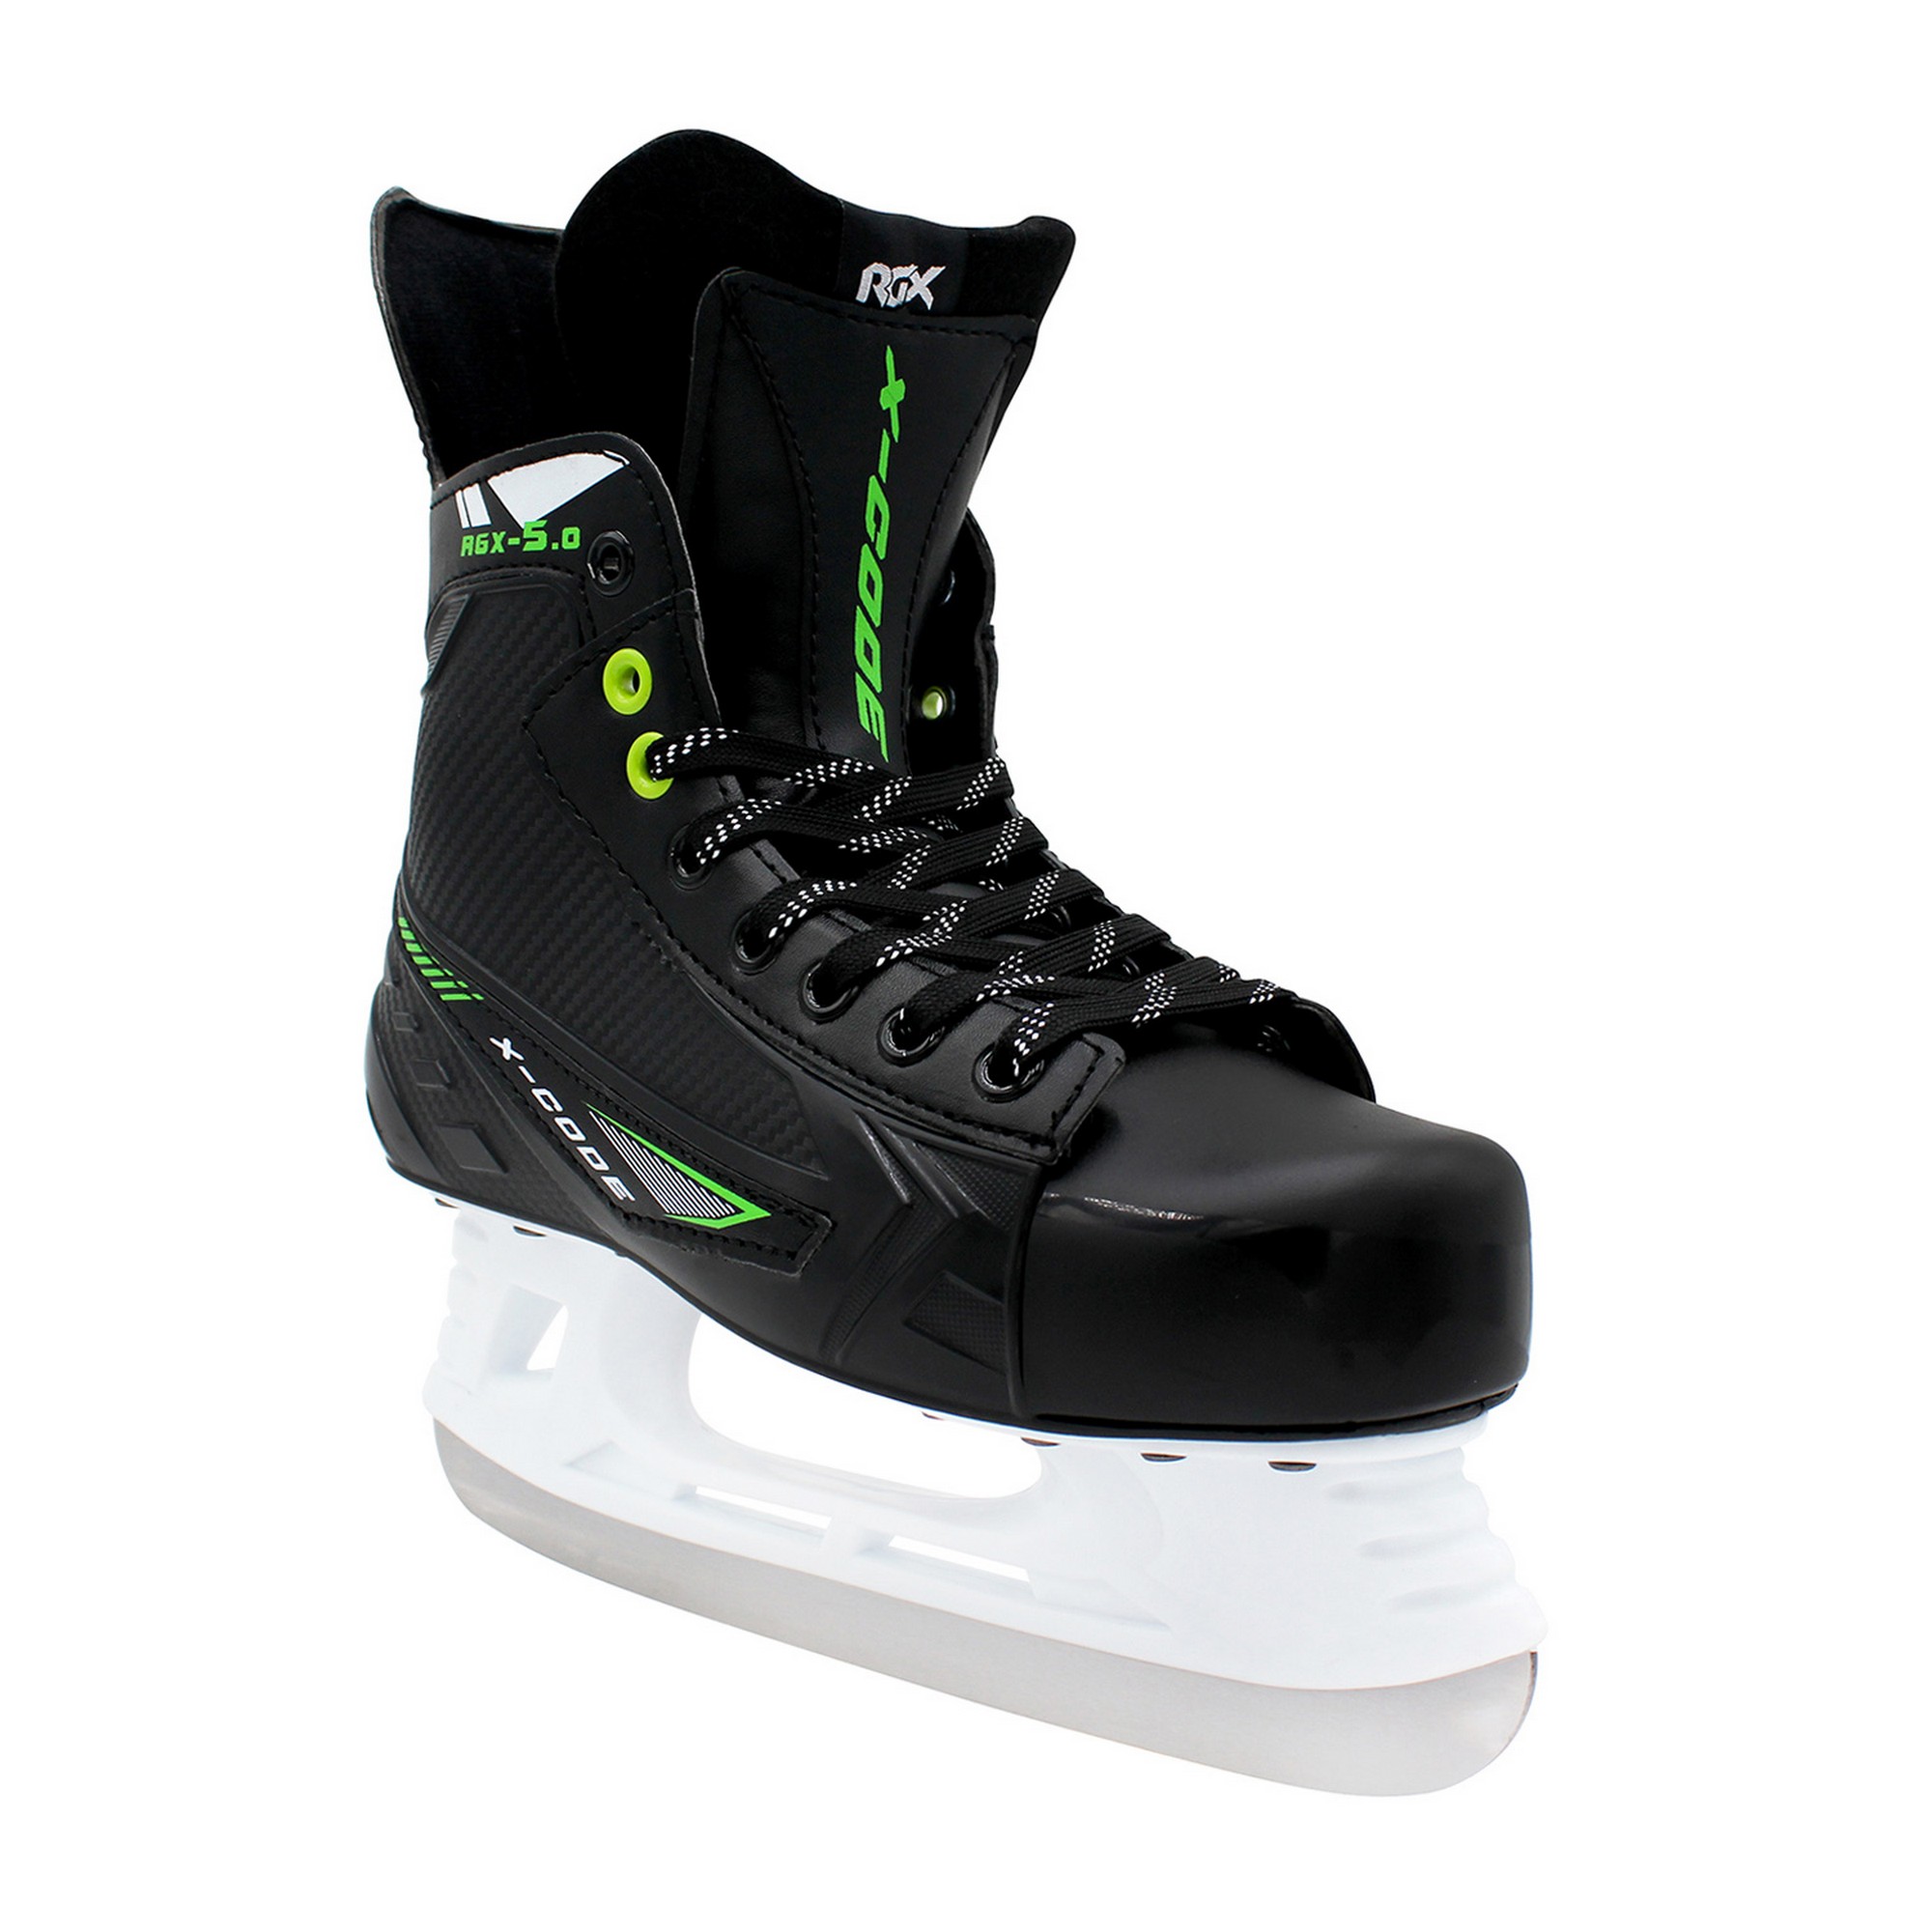 Хоккейные коньки RGX RGX-5.0 X-CODE Green 2000_2000